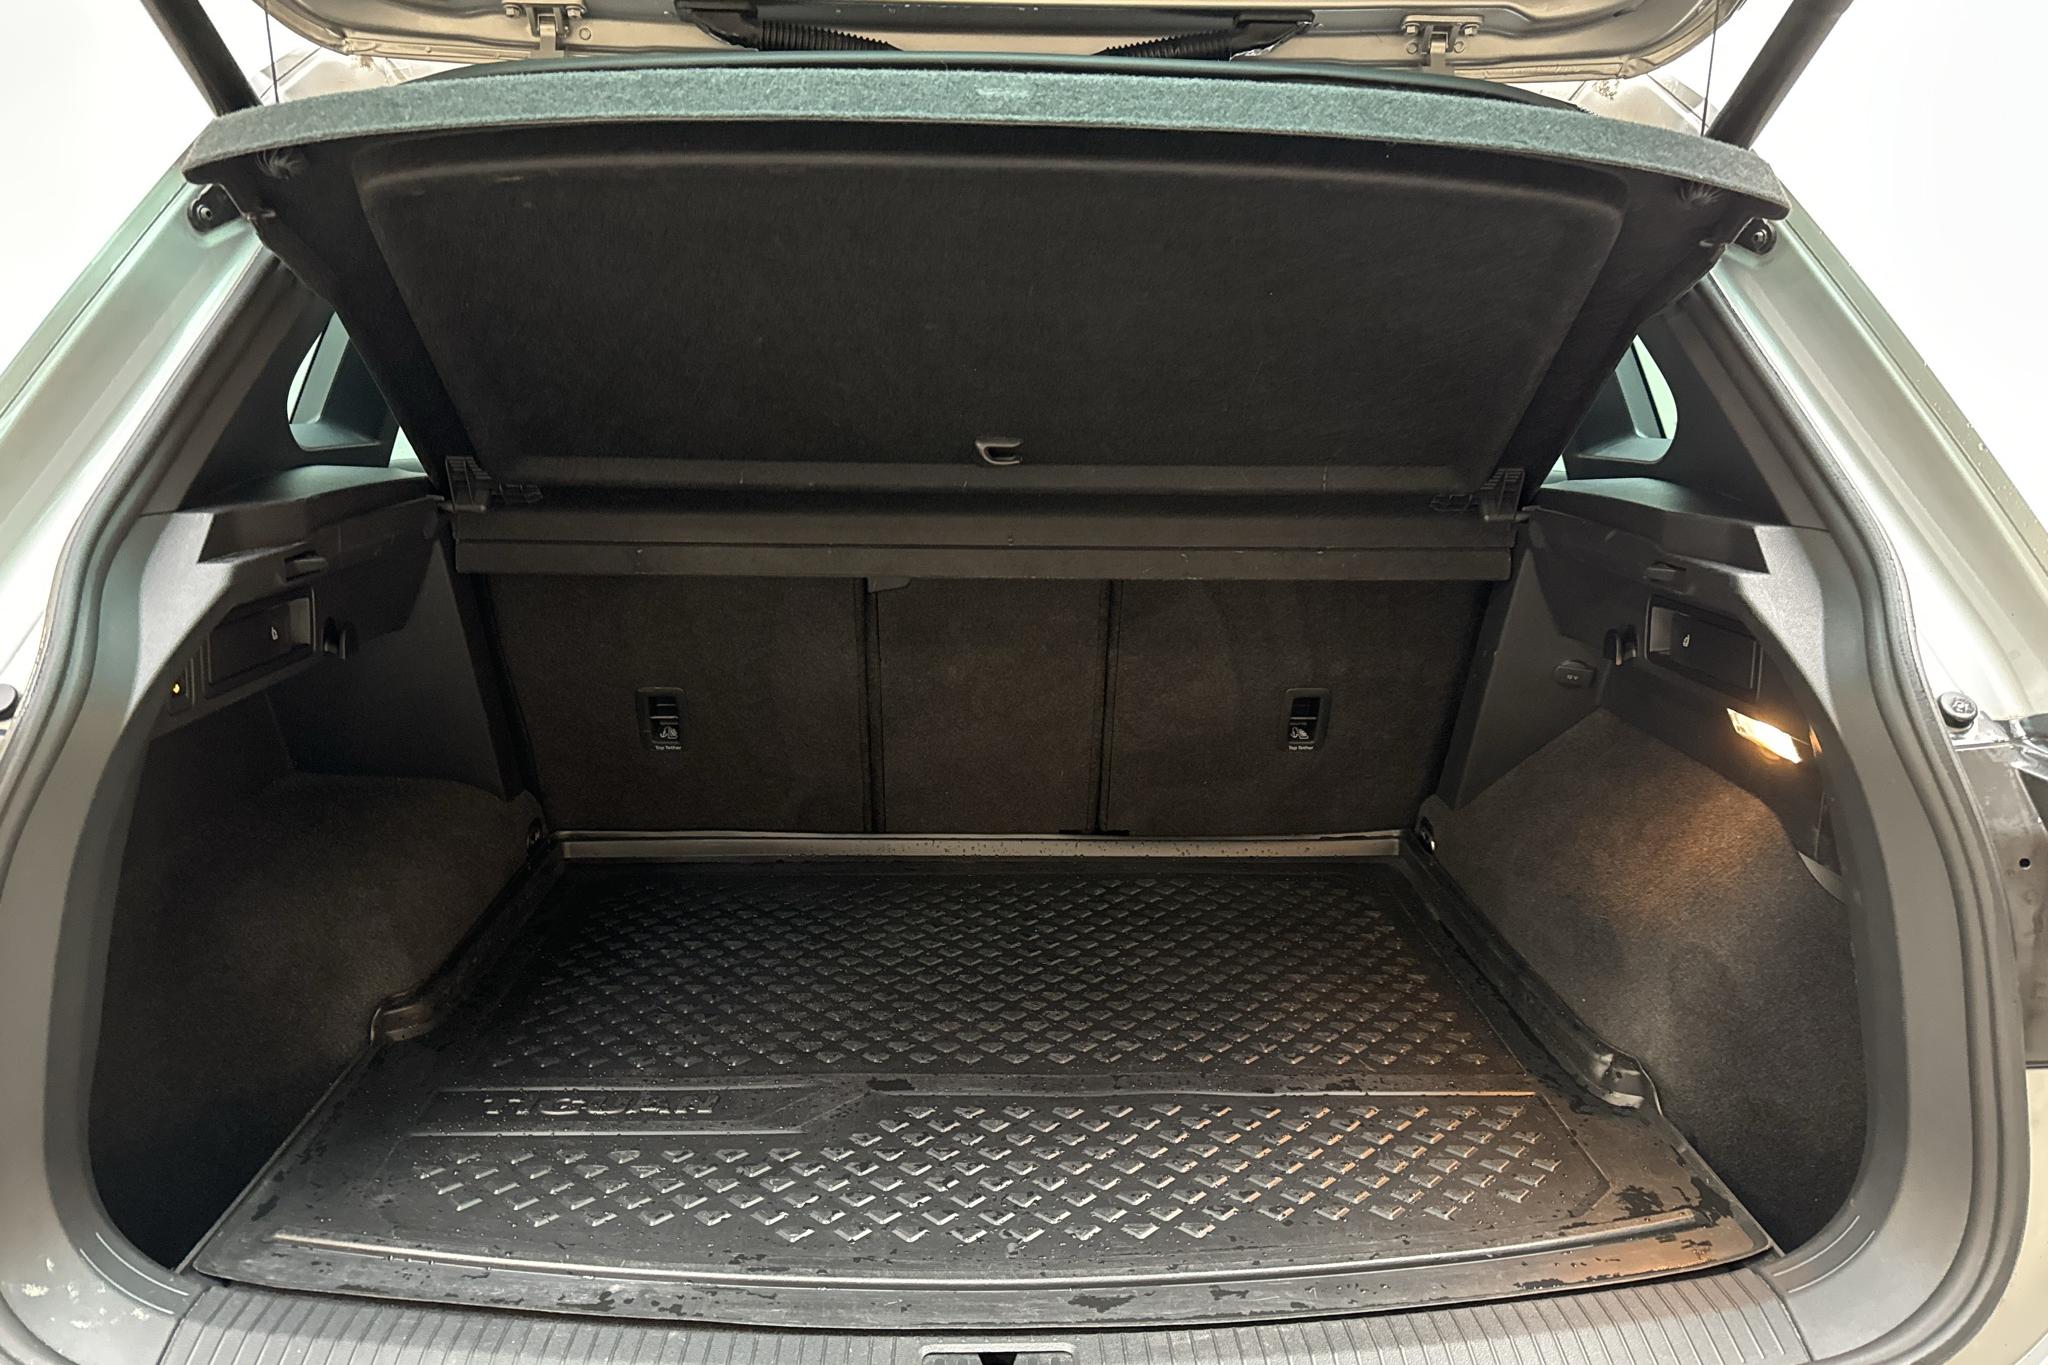 VW Tiguan 2.0 TDI 4MOTION (240hk) - 13 736 mil - Automat - silver - 2018